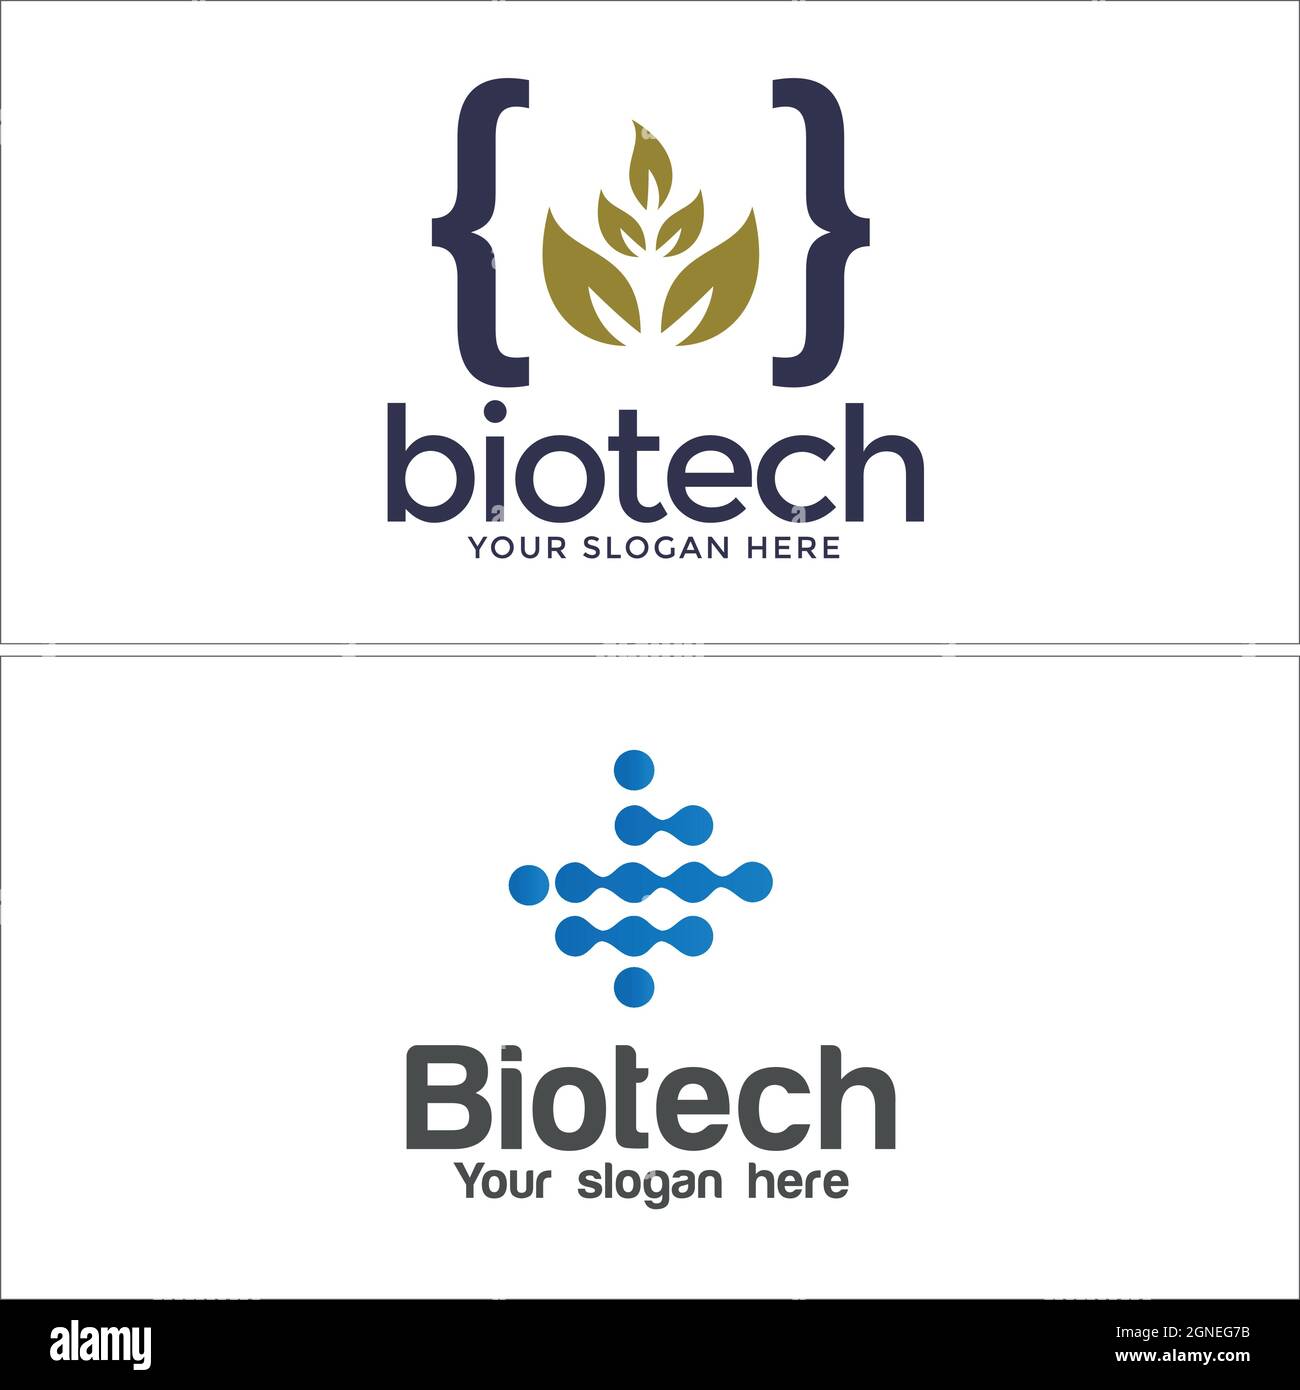 Biology Logos | Biology Logo Maker | BrandCrowd